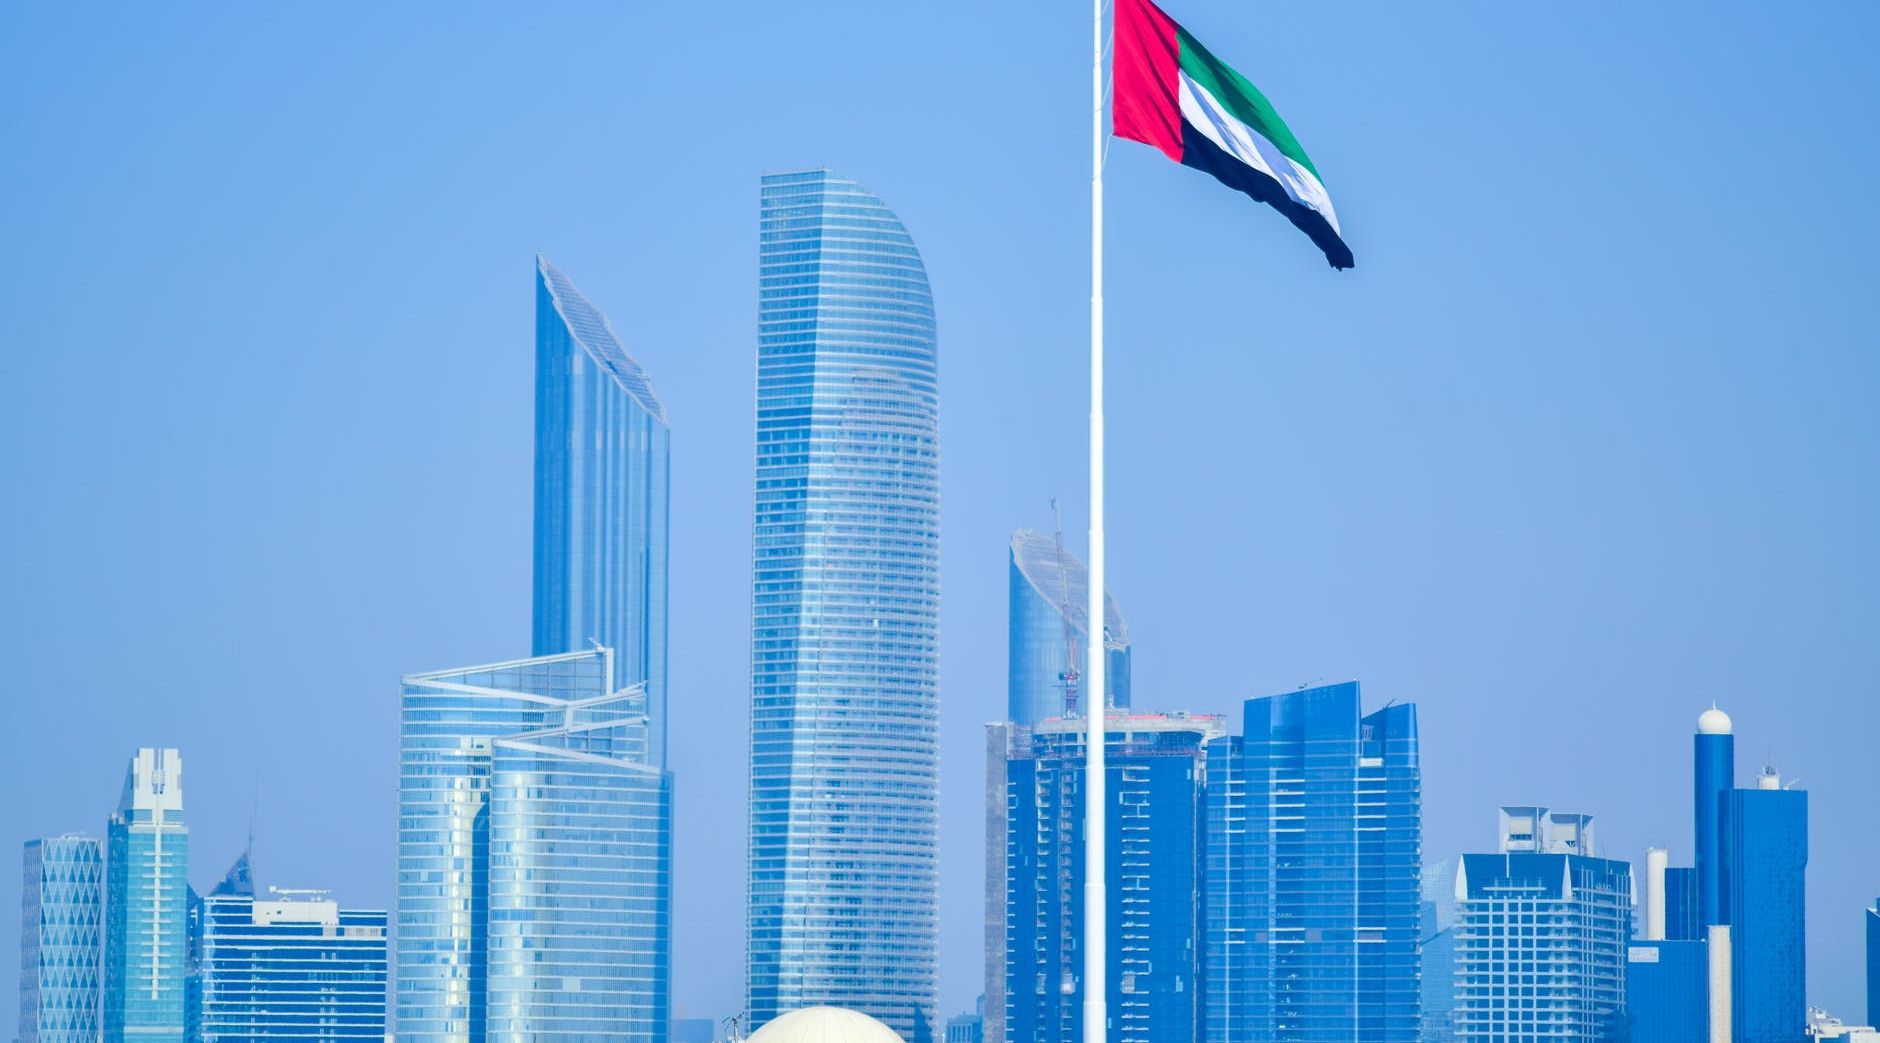 الإمارات تتصدر قائمة الدول الأكثر مرونة في مواجهة كوفيد 19 وسط ظهور متحوّر " أوميكرون"